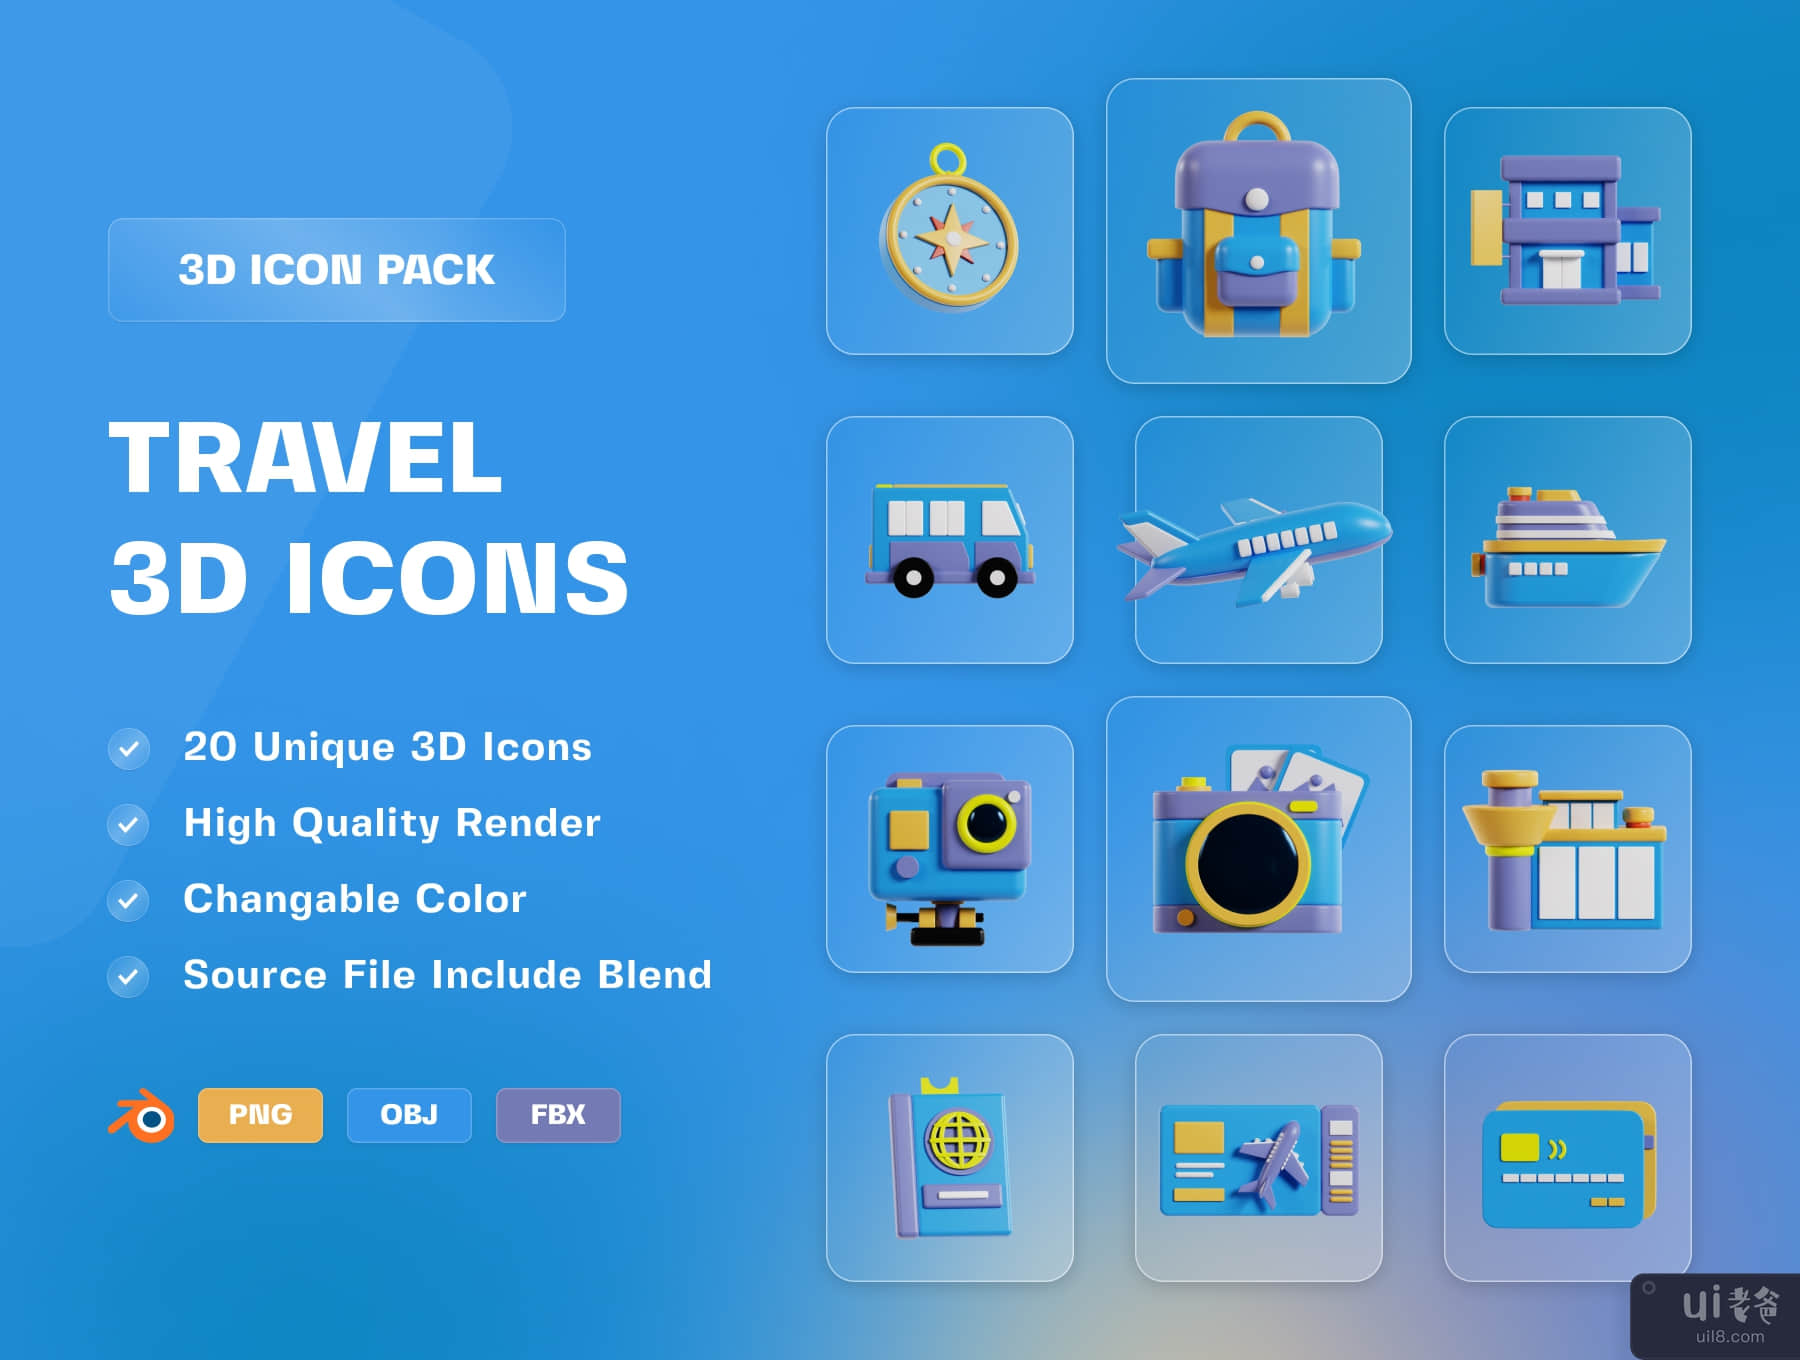 旅行和度假 3D 图标包 (Travel & Vacation 3D Icon Pack)插图5